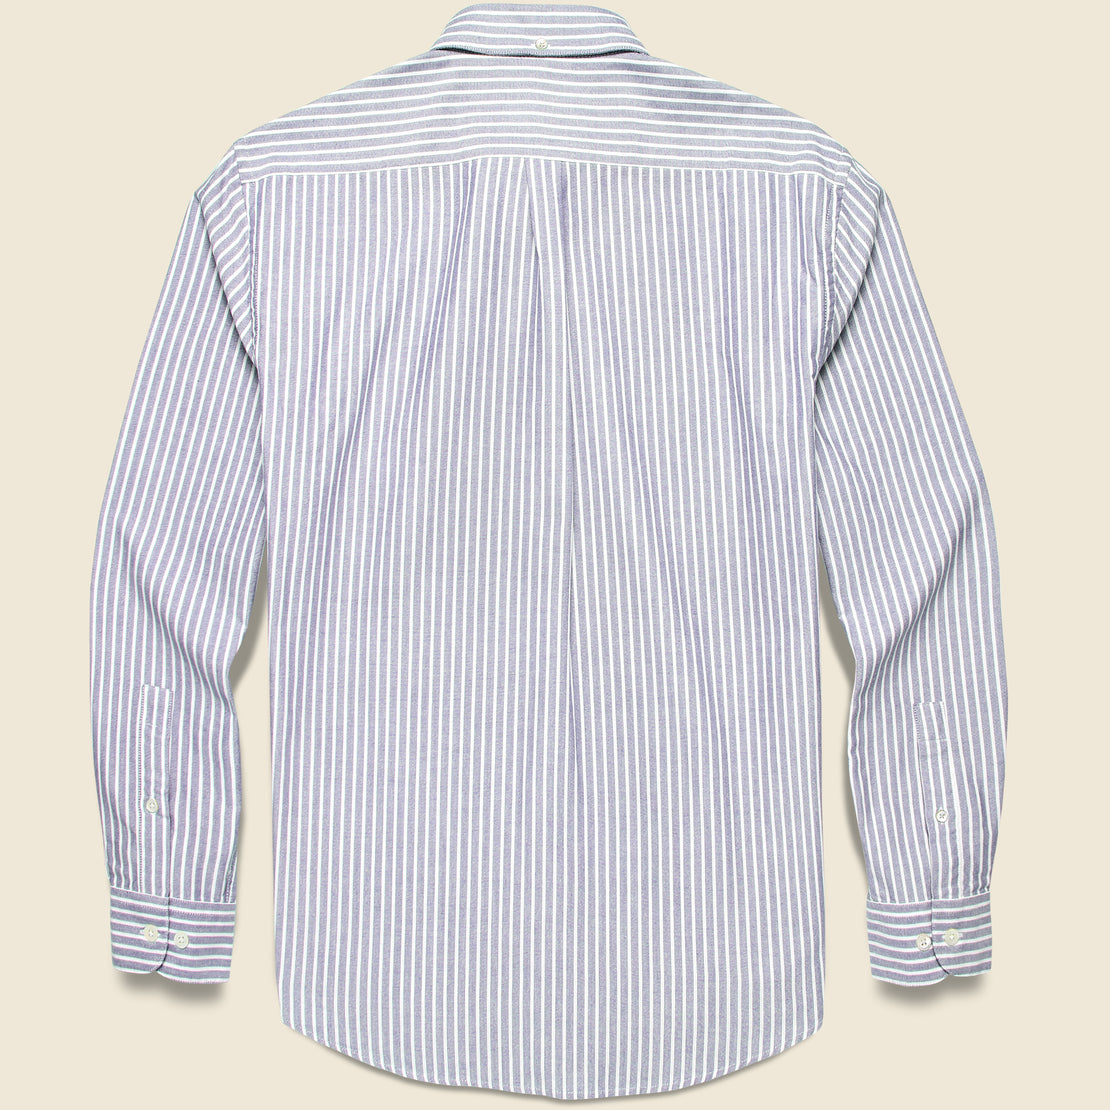 Belavista Oxford Shirt - Blue Stripe - Portuguese Flannel - STAG Provisions - Tops - L/S Woven - Stripe